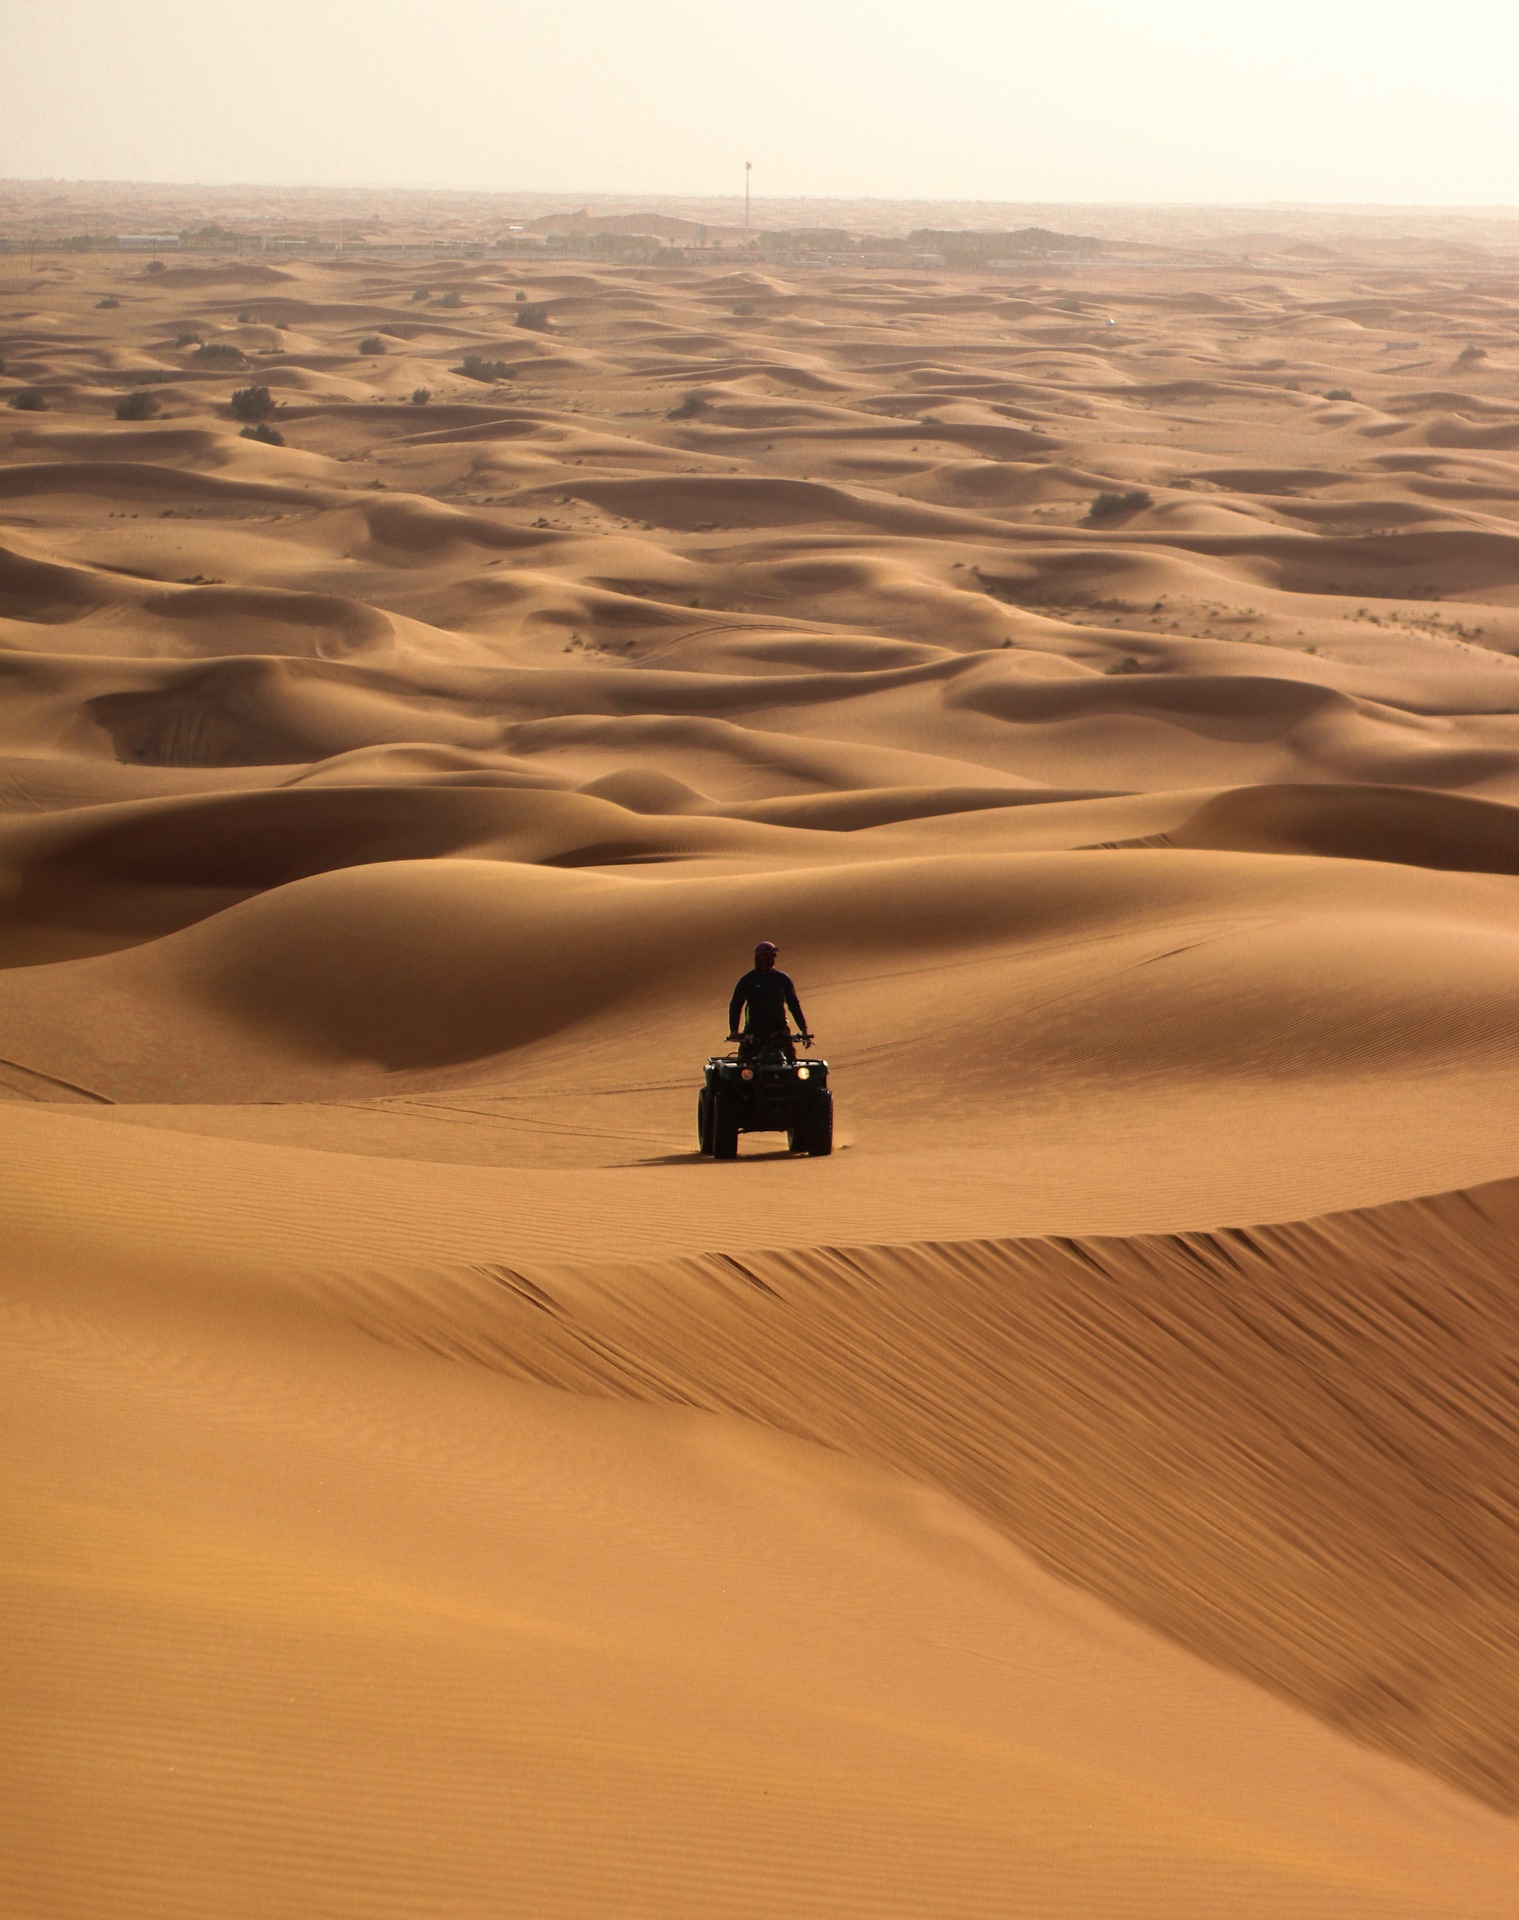 사막에서 쿼드 바이크를 타고 있는 한 사람